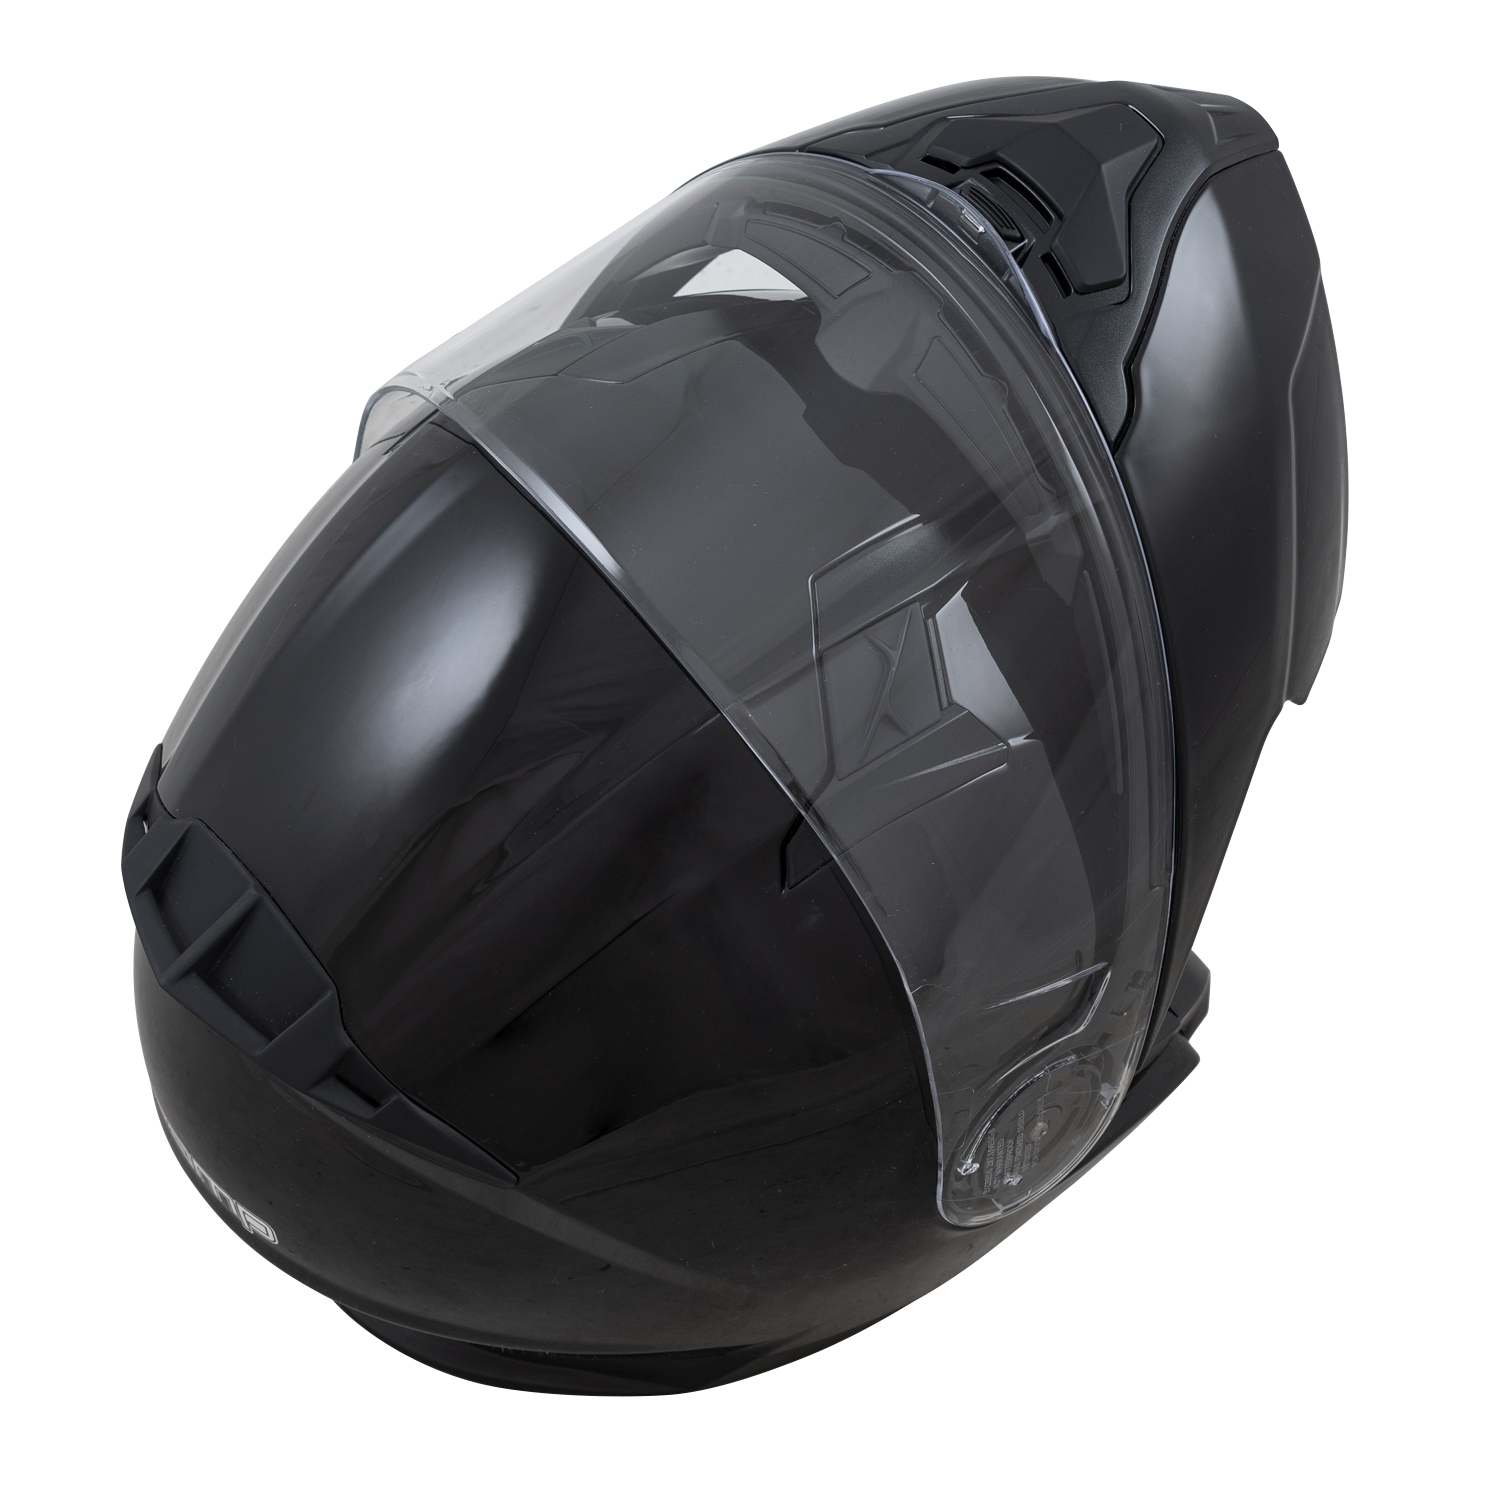 FL-4 Gloss Black Helmet